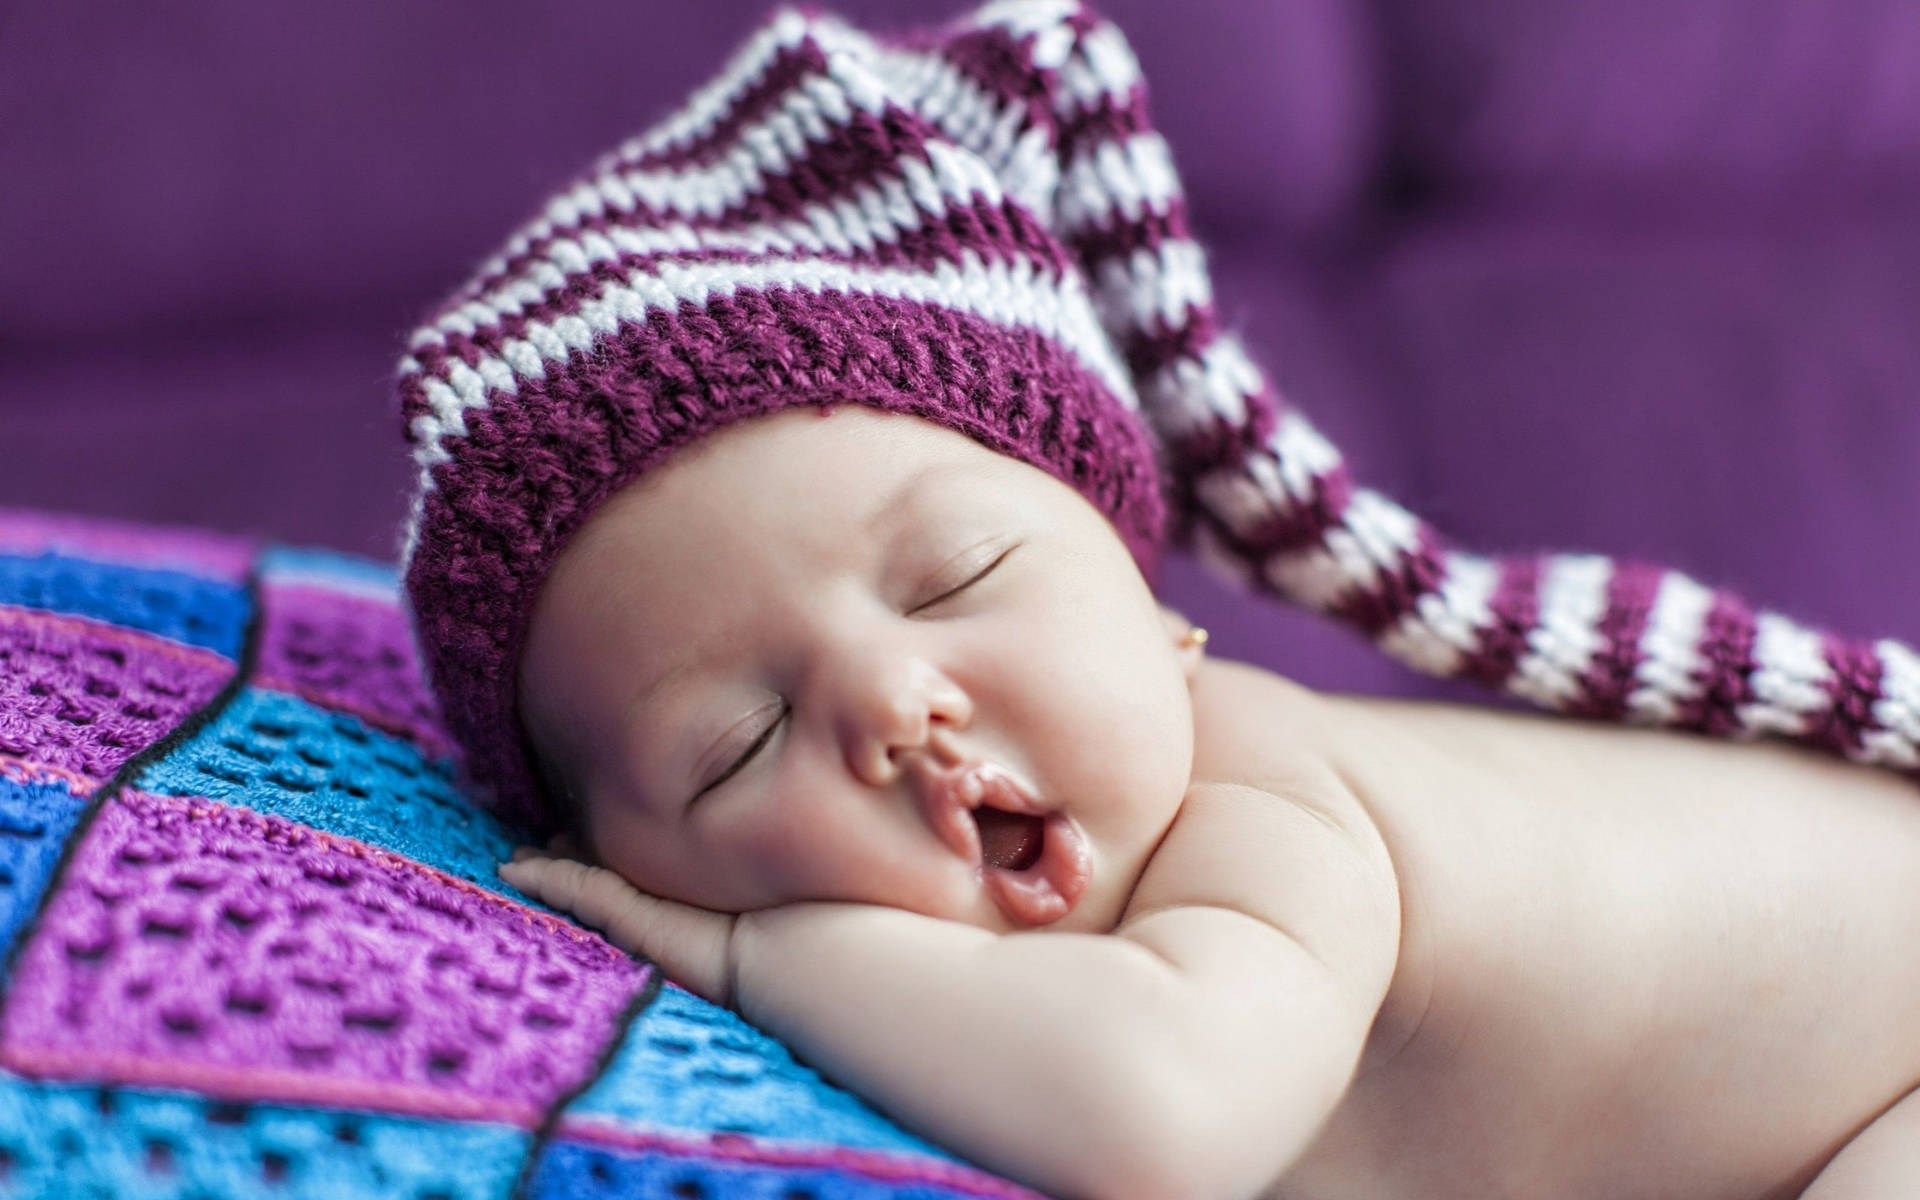 Sleeping Baby Wearing Purple Crochet Bonnet Wallpaper